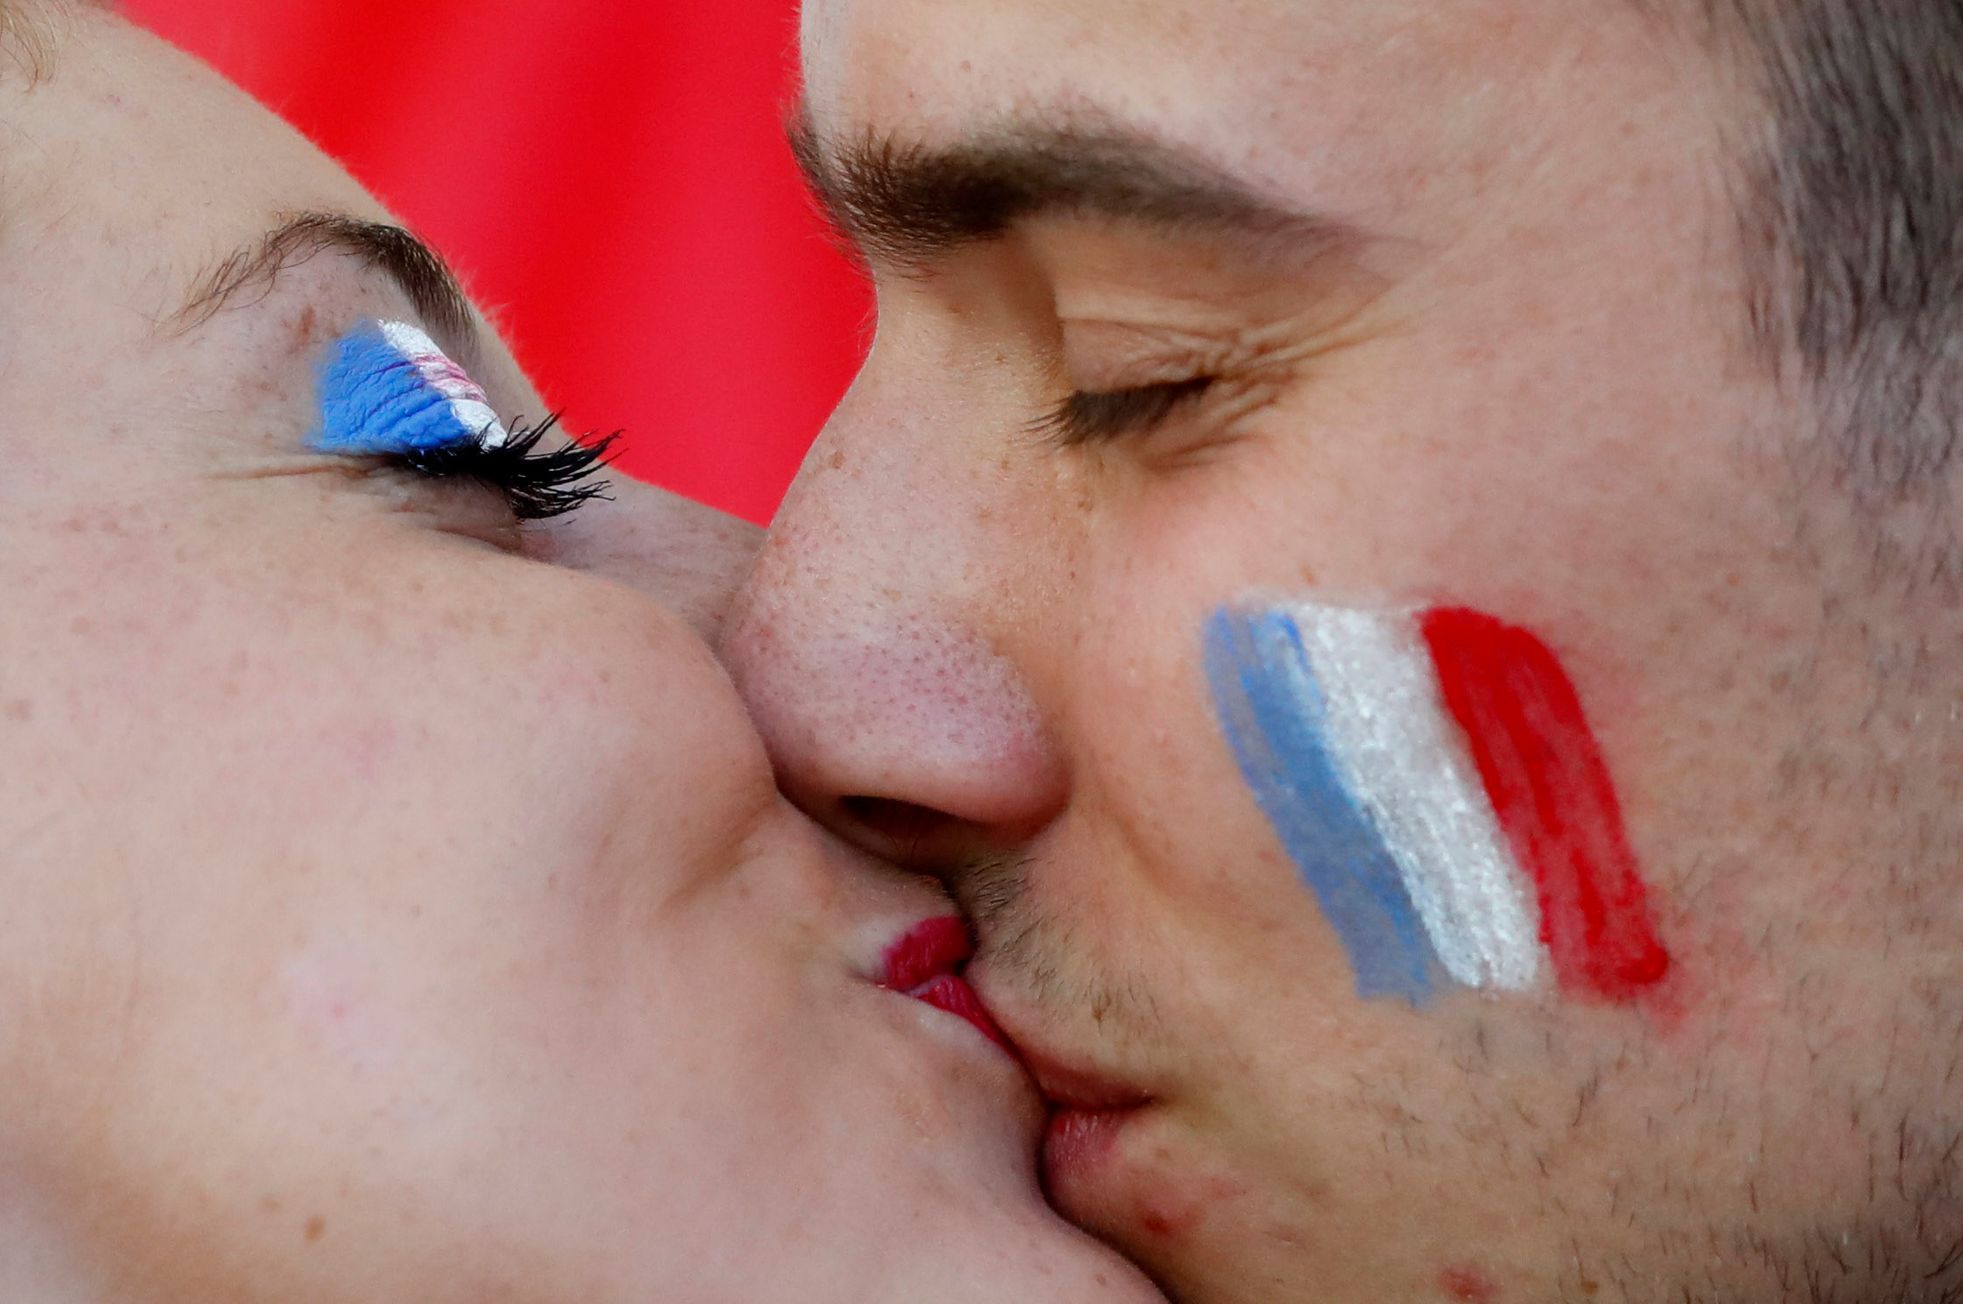 Euro 2016, Francie-Německo: polibek fanoušků Francie